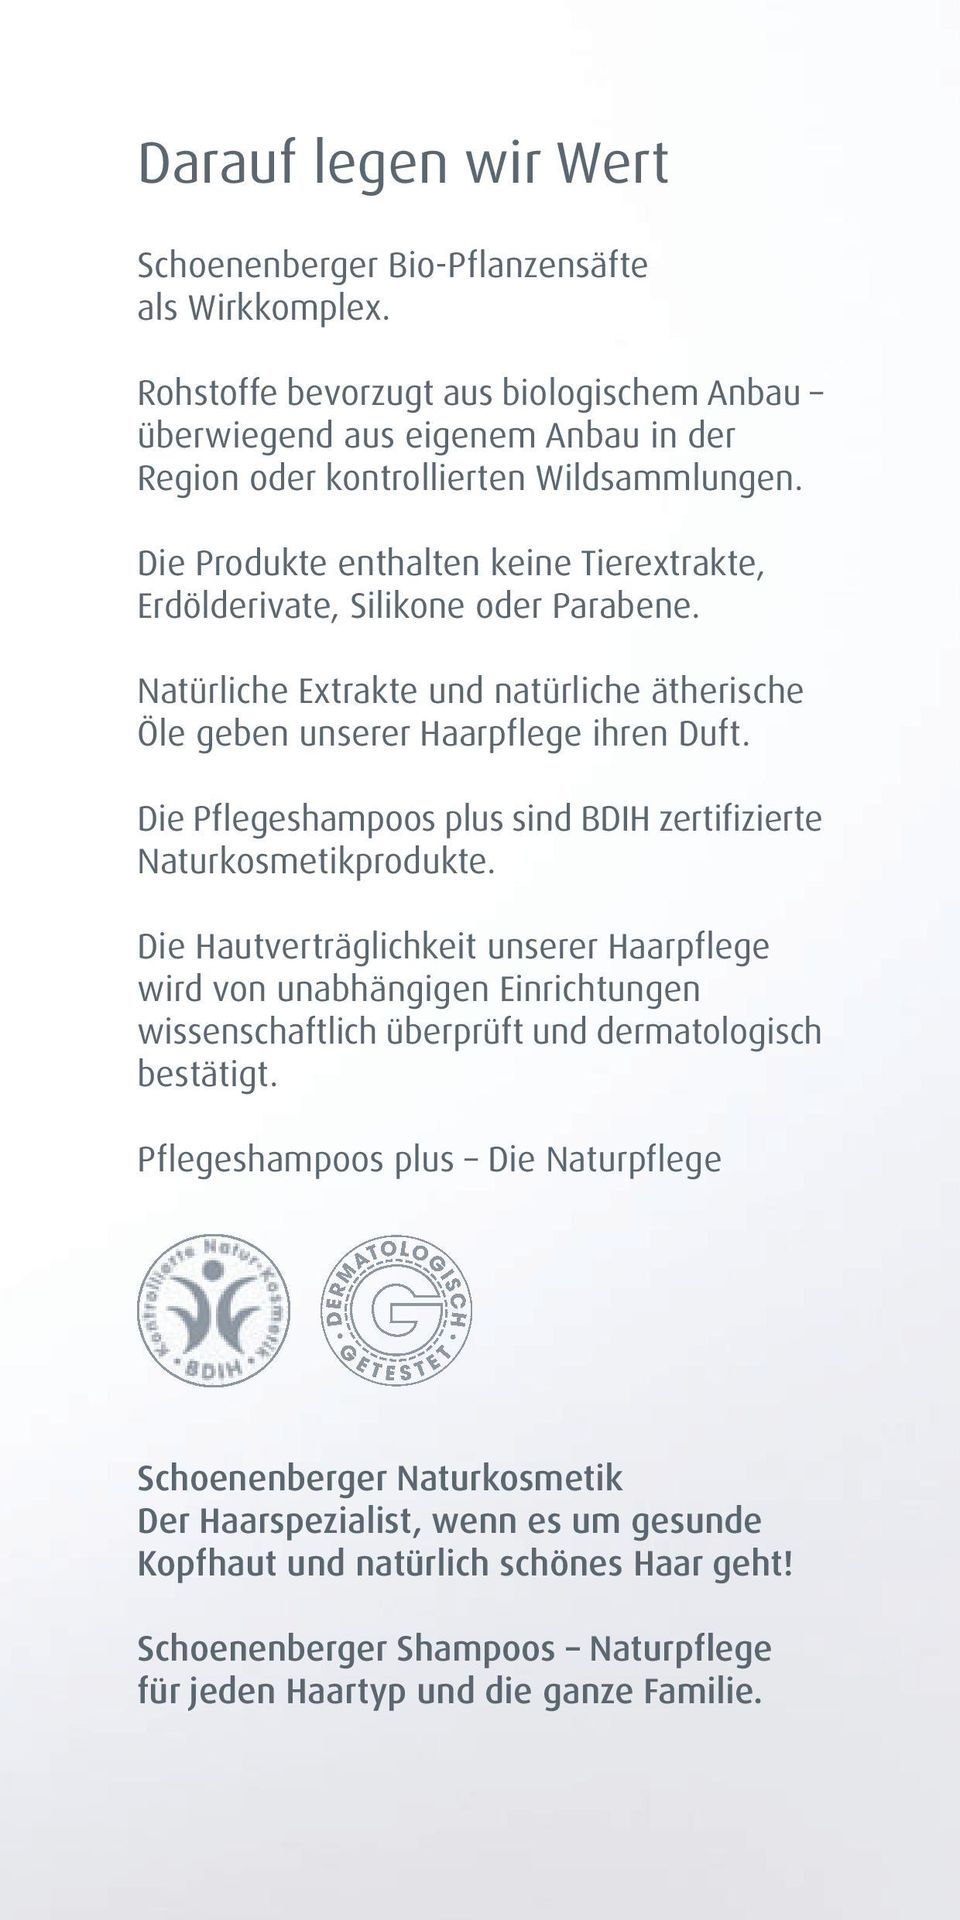 Die Pflegeshampoos plus sind BDIH zertifizierte Naturkosmetikprodukte.